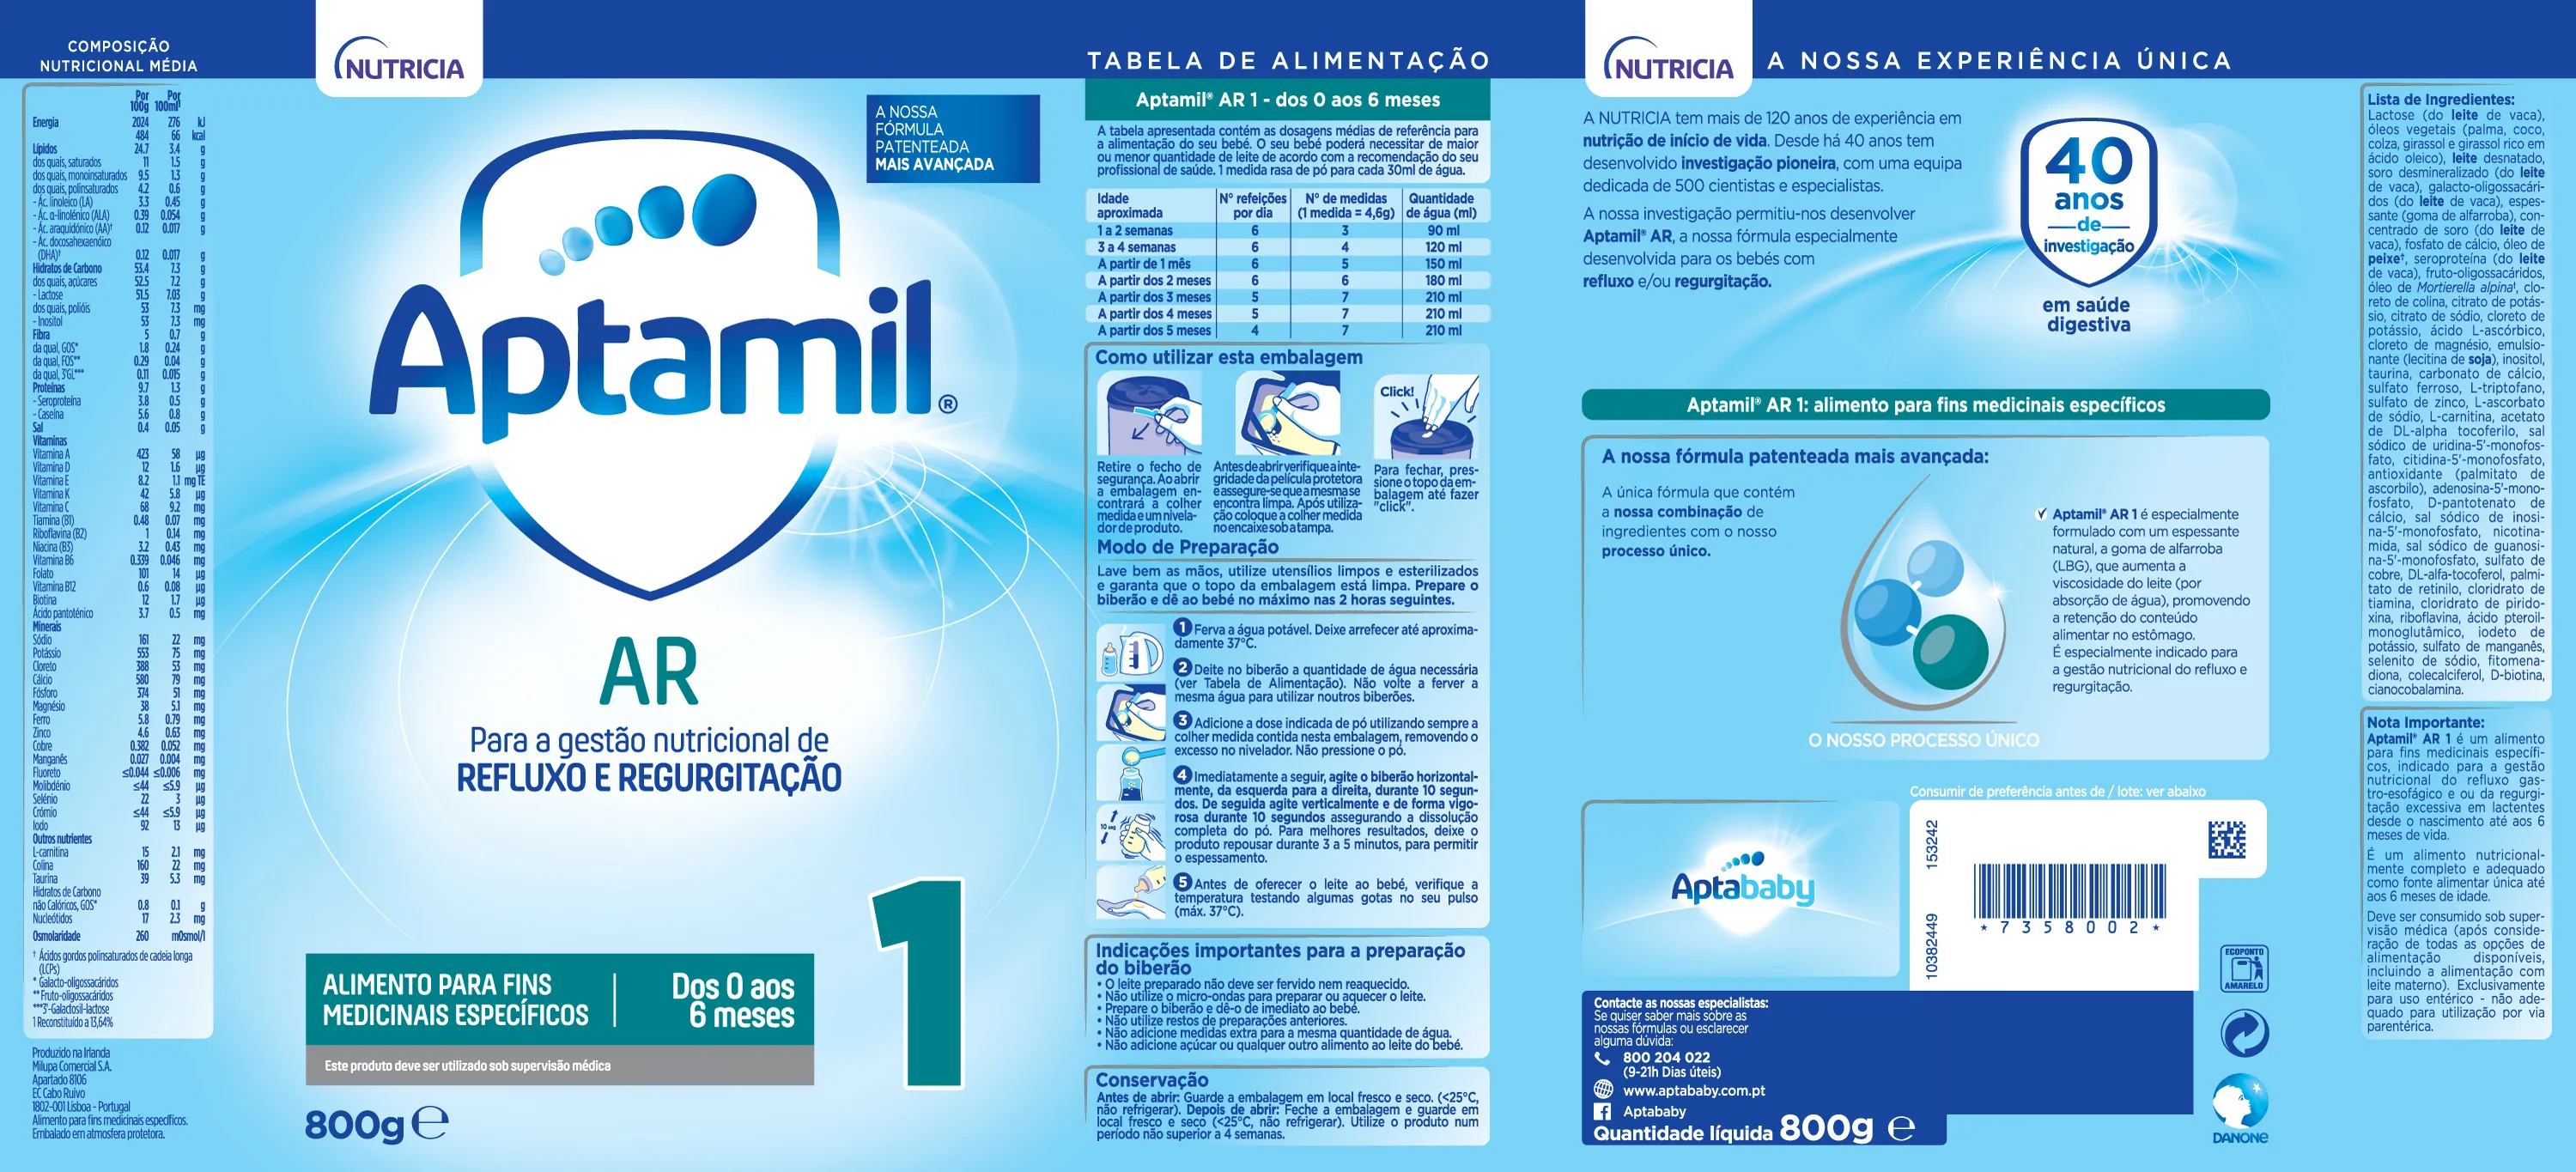 Aptamil AR 1 Anti-Regurgitation Milk 800g